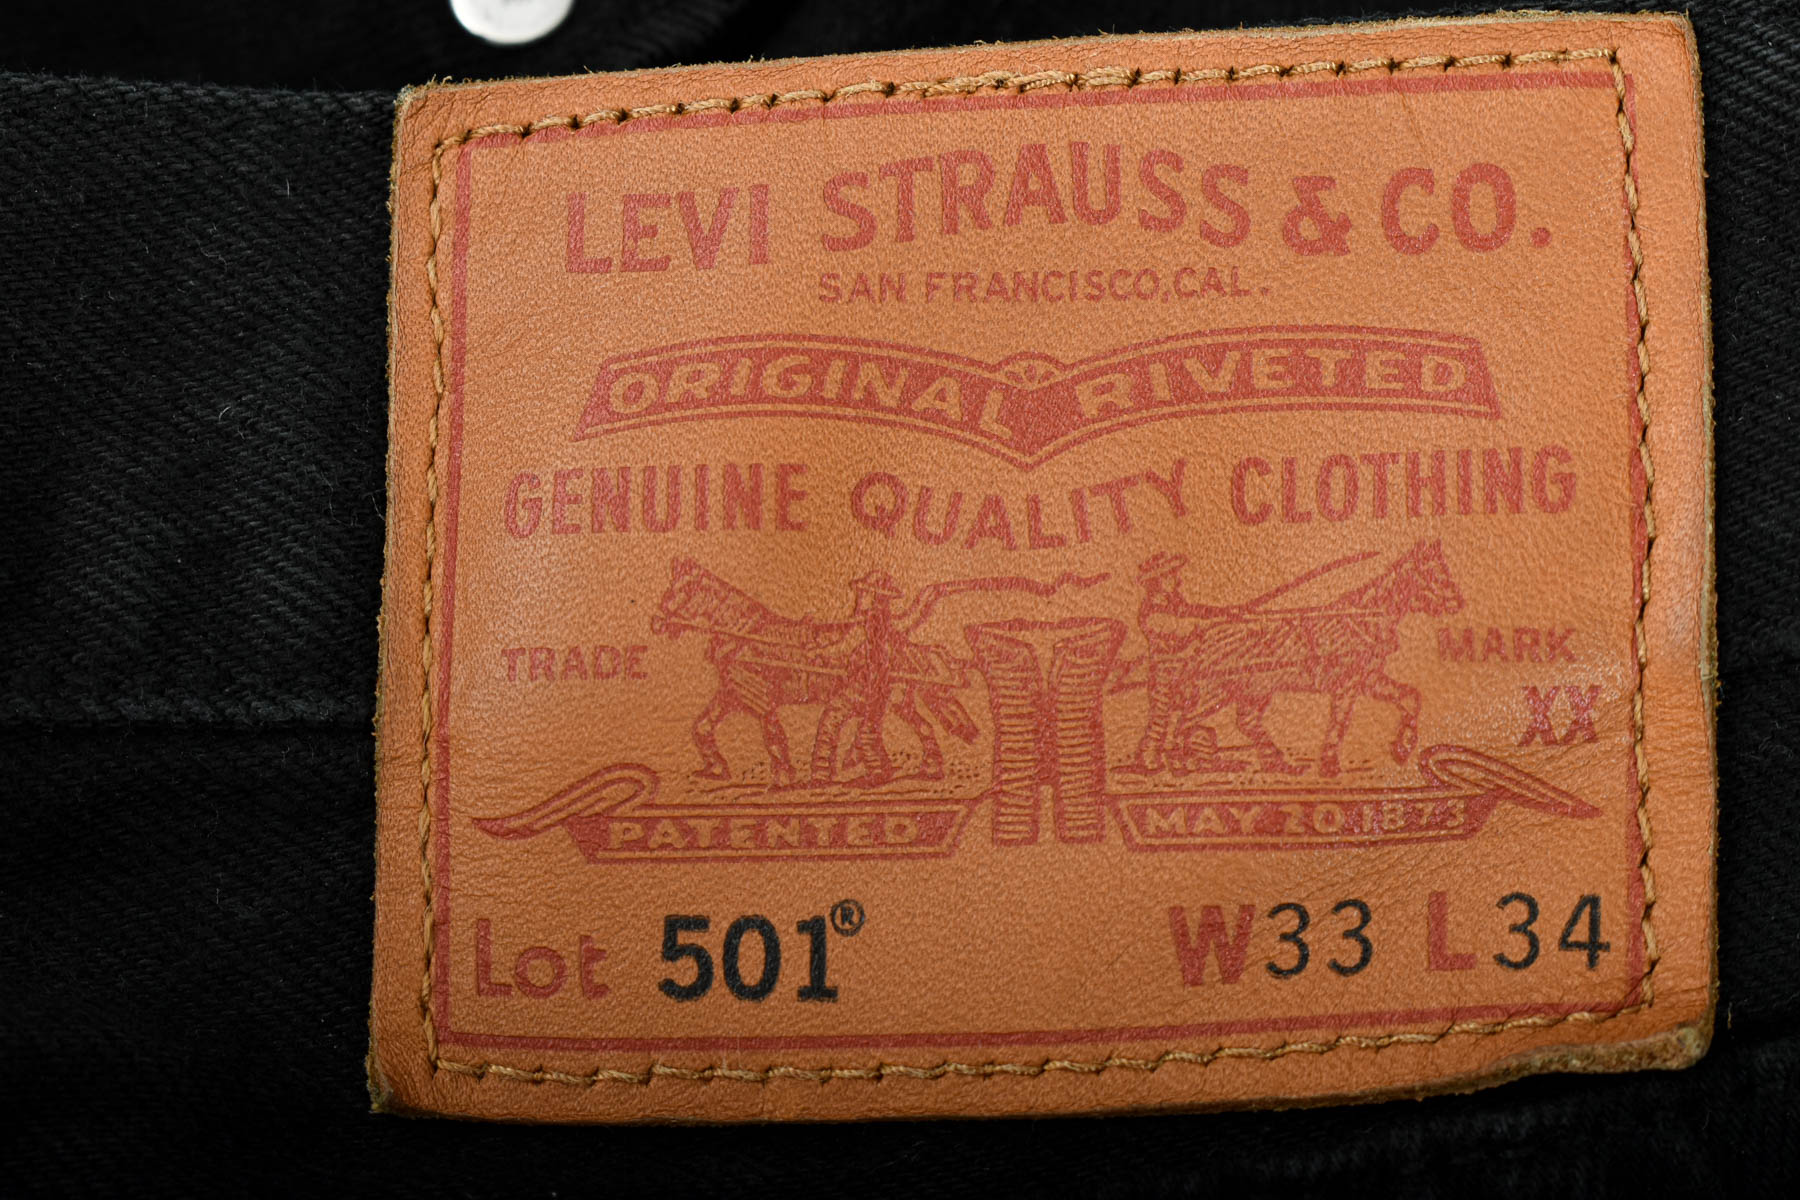 Męskie dżinsy - Levi Strauss & Co - 2